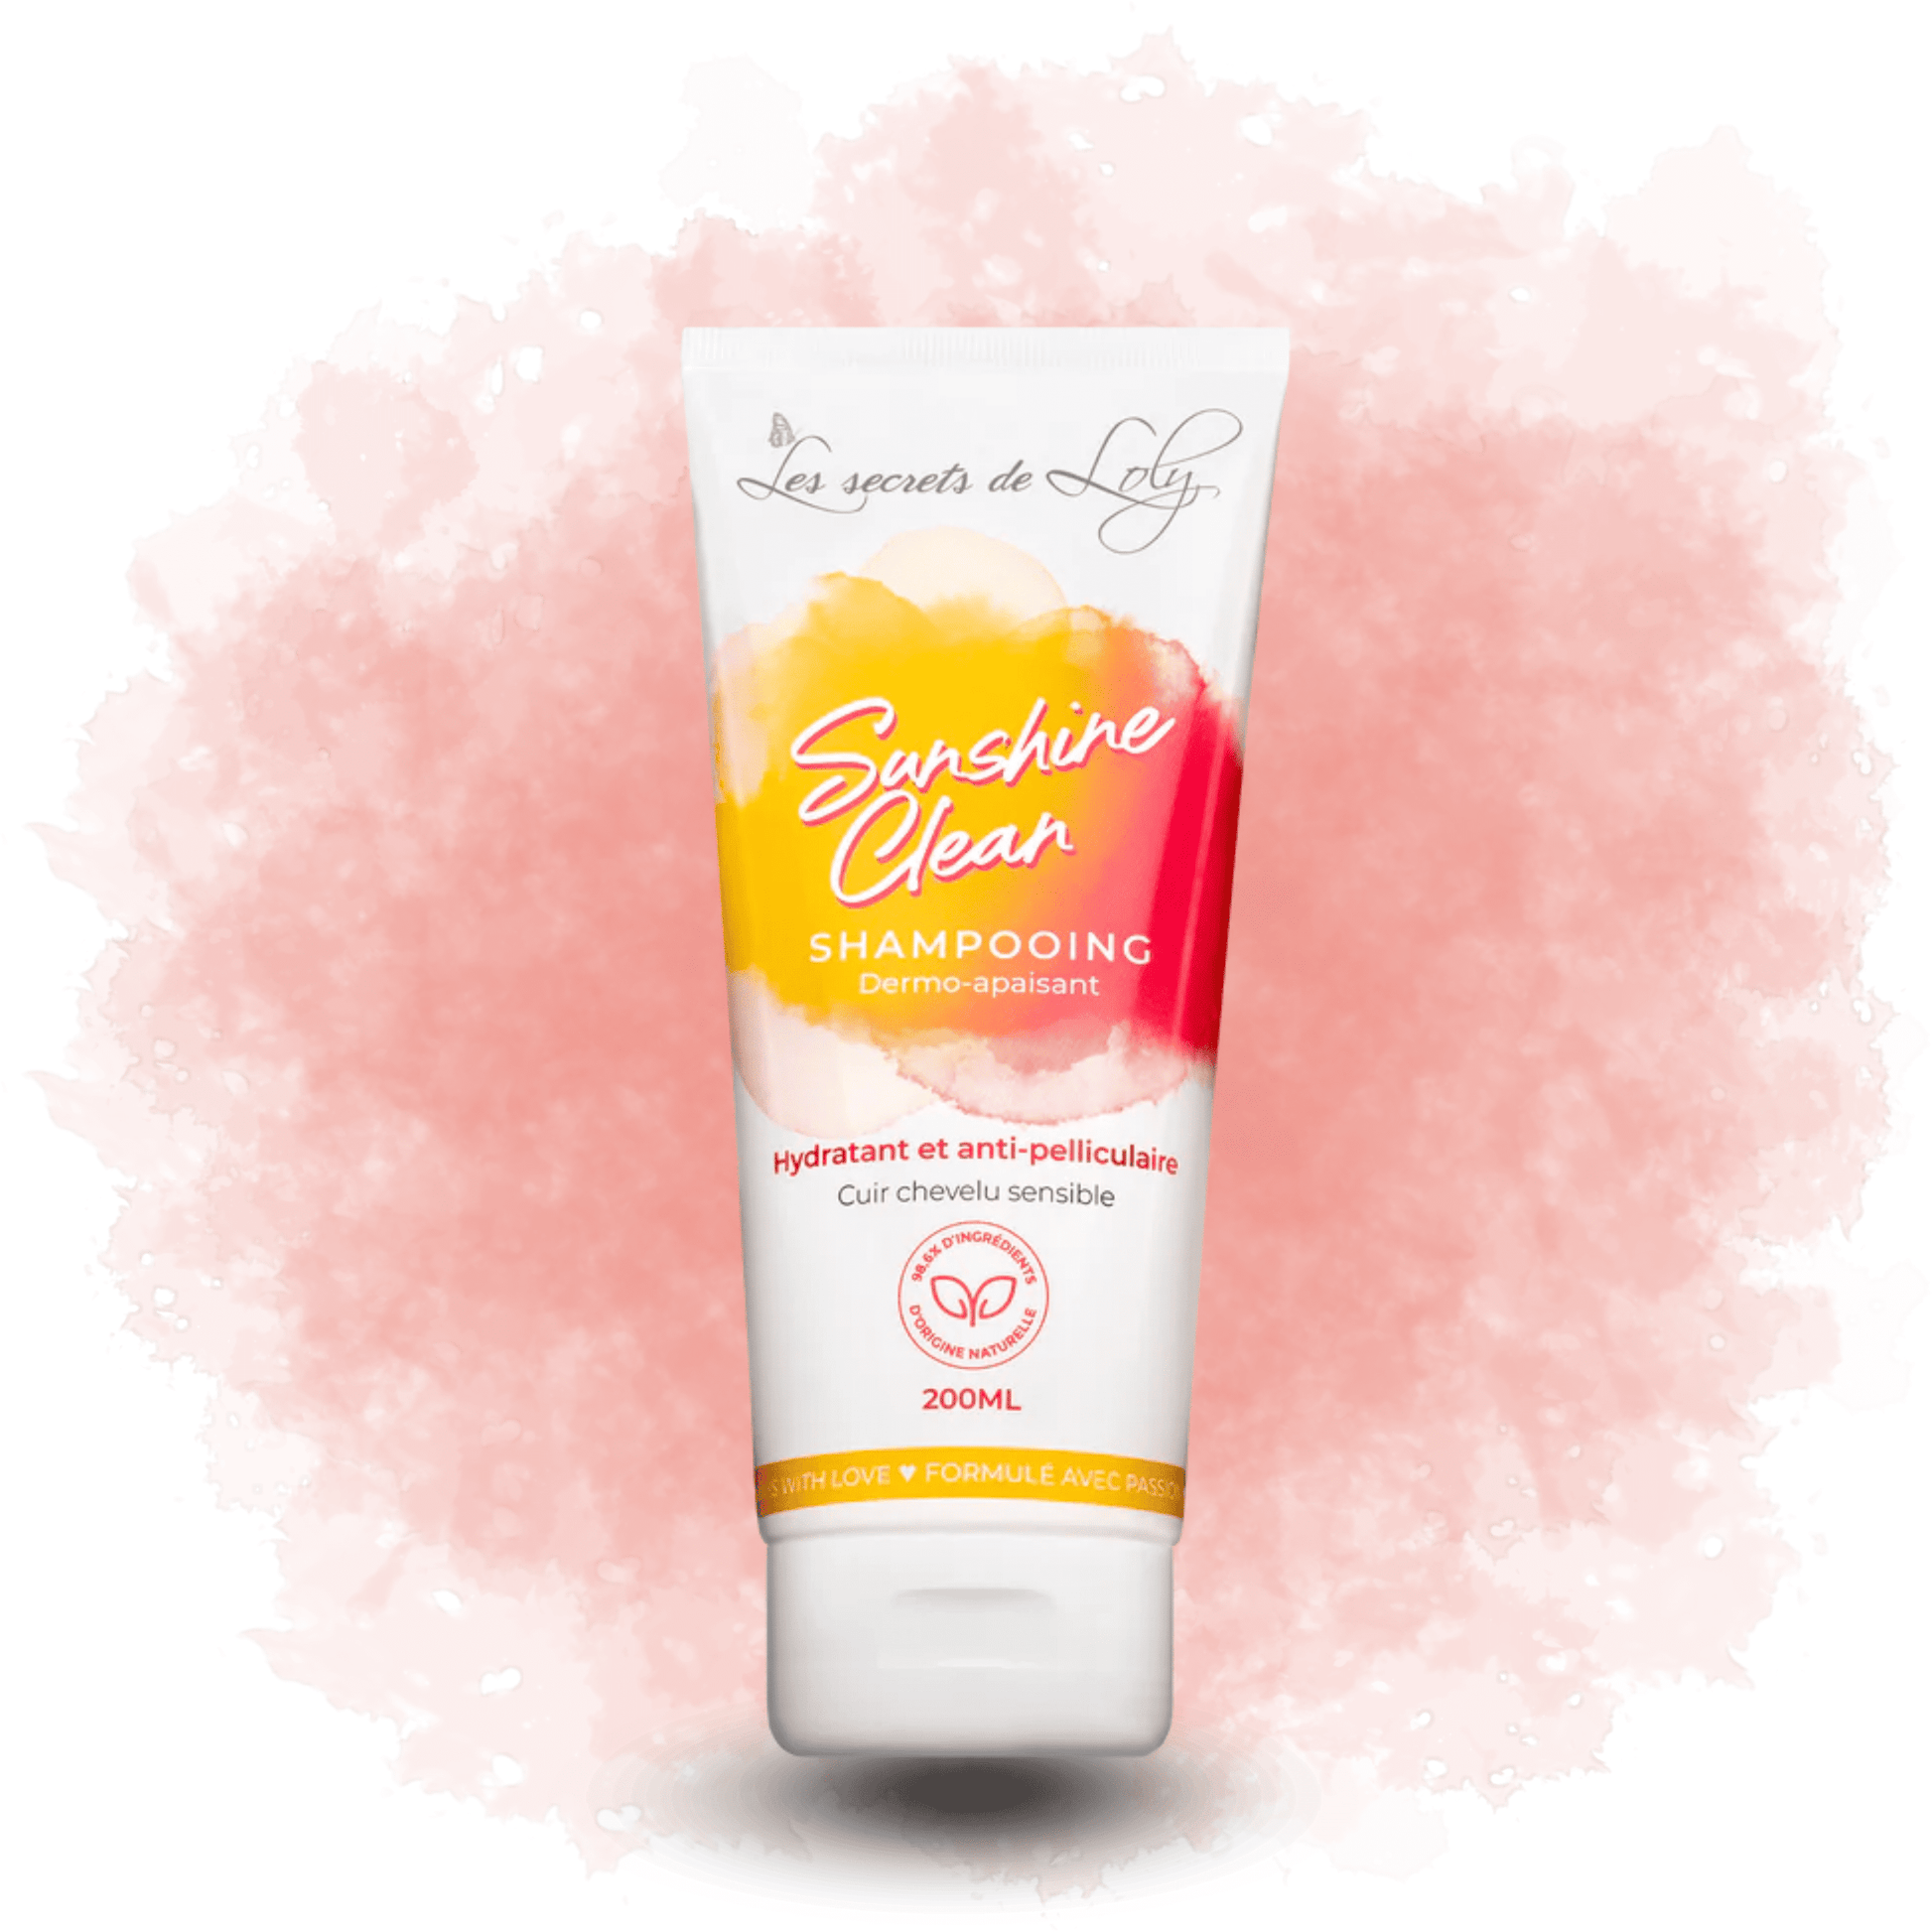 Les Secrets de Loly - Shampoing Sunshine Clean - 200 ML - Les secrets de Loly - Ethni Beauty Market